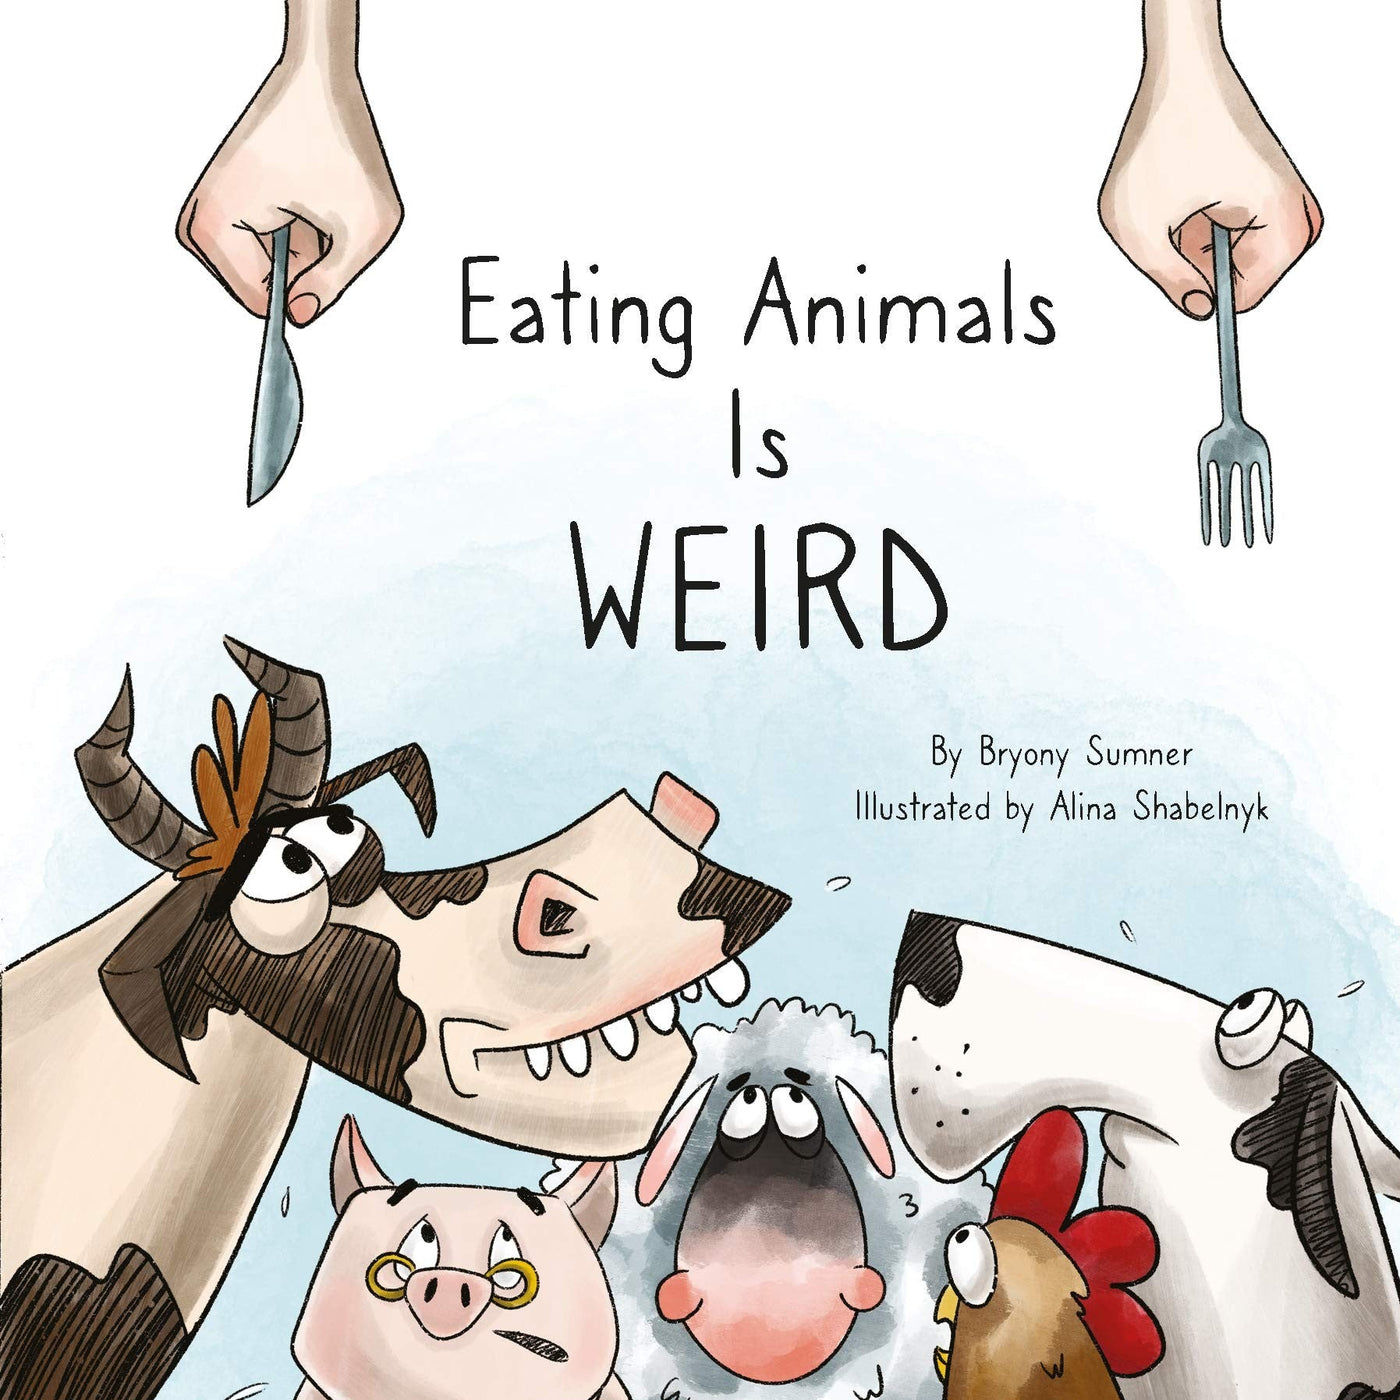 Eating Animals Is Weird - Bryony Sumner & Alina Shbelnyk